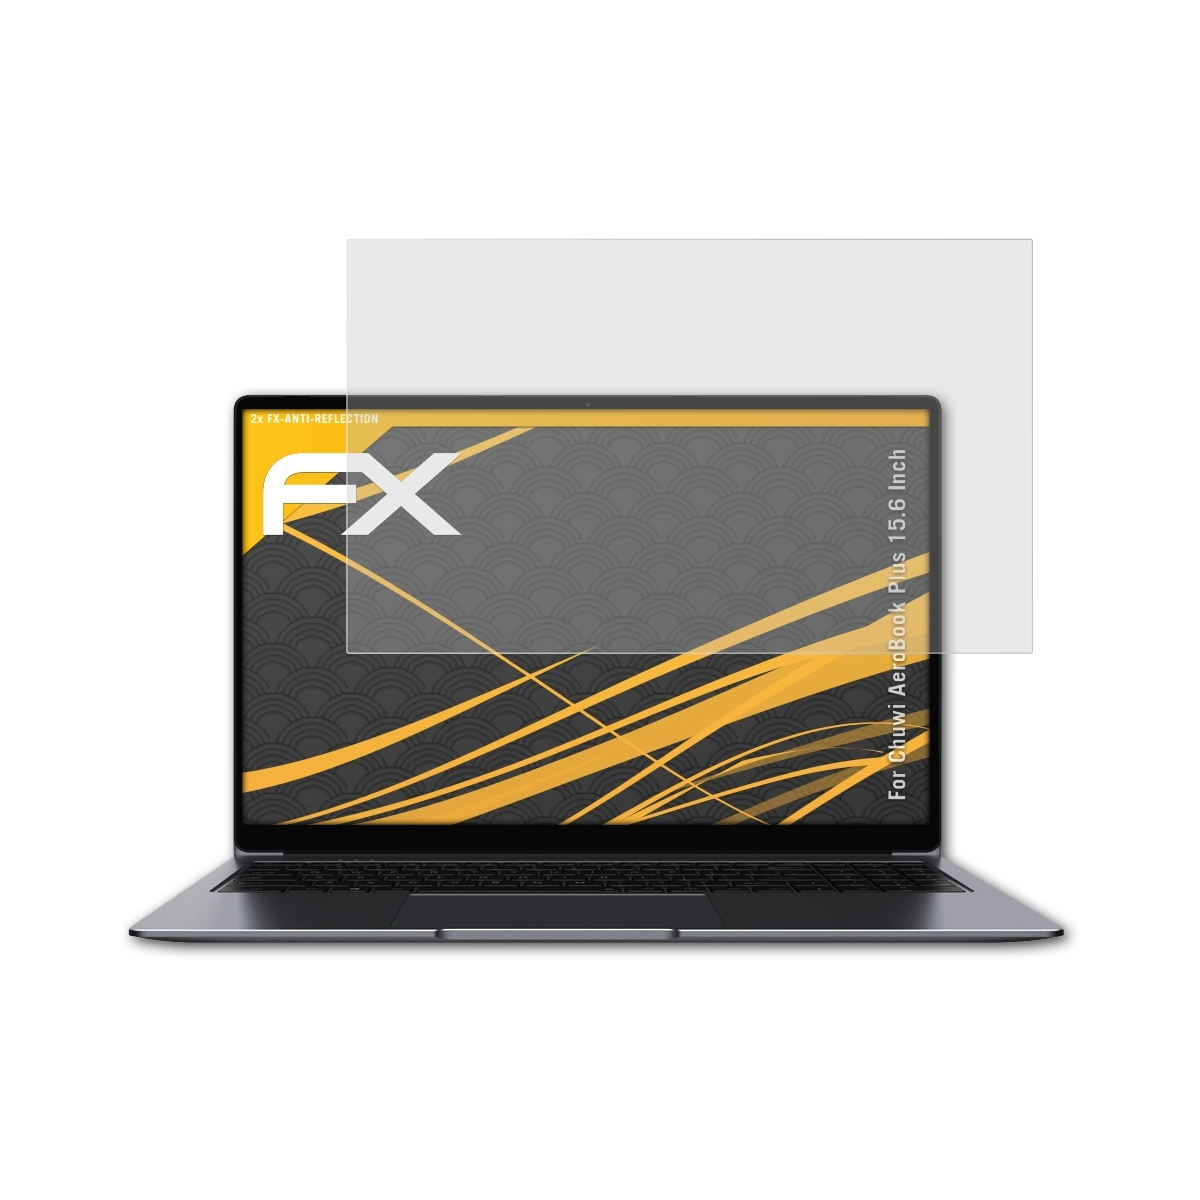 ATFOLIX 2x FX-Antireflex Displayschutz(für (15.6 Inch)) Chuwi AeroBook Plus